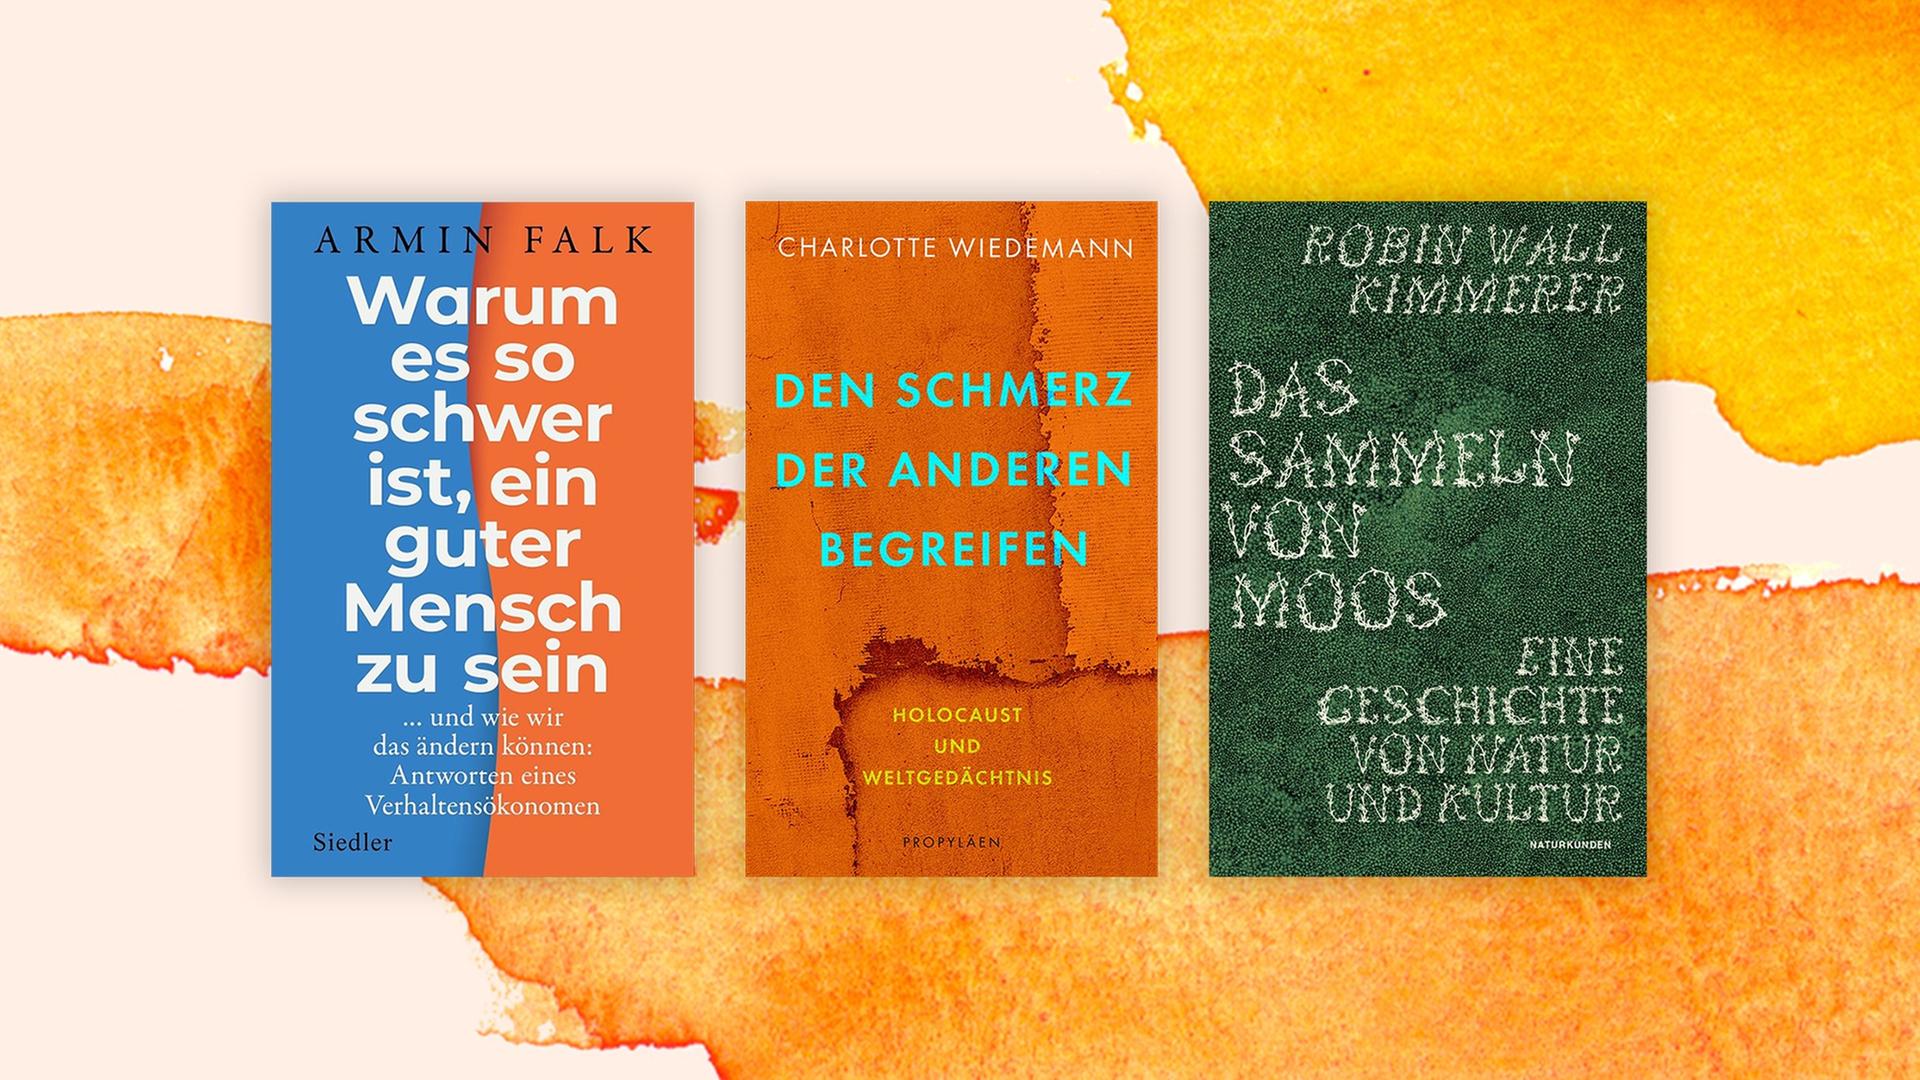 Die Cover der Sachbücher von Armin Falk, "Warum es so schwer ist, ein guter Mensch zu sein", von Charlotte Wiedemann "Den Schmerz der Anderen begreifen. Holocaust und Weltgedächtnis", von Robin Wall Kimmerer, "Das Sammeln von Moos" auf einem orange-weißem Hintergrund.